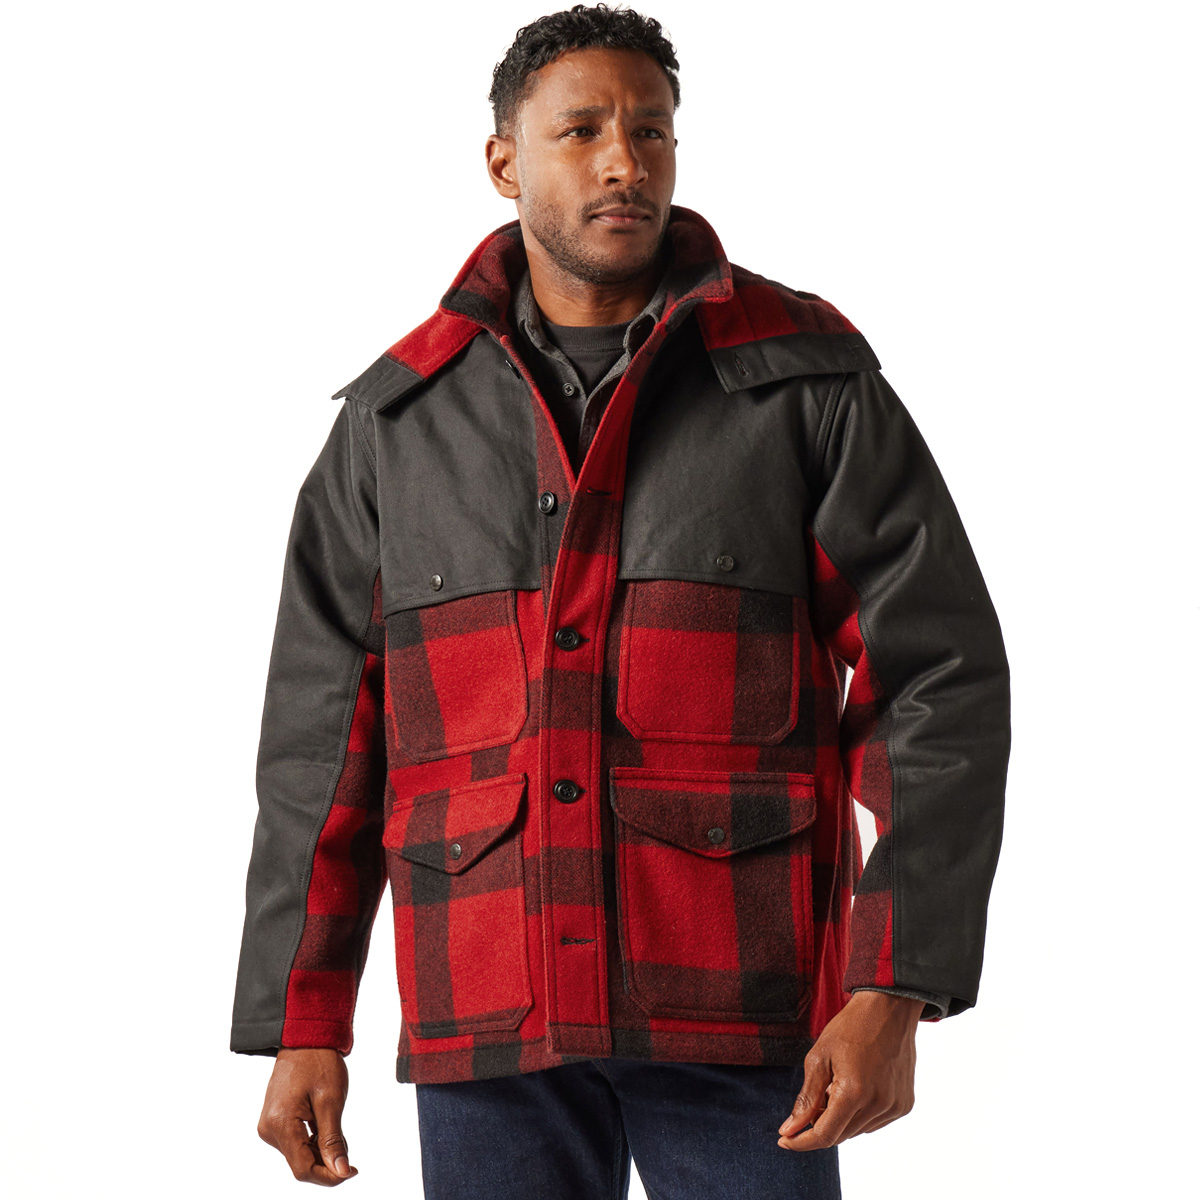 Filson Mackinaw Wool Double Coat Red Black Classic Plaid, aus 100 % Mackinaw-Schurwolle für Komfort, natürliche wasserabweisende Eigenschaften und isolierende Wärme bei jedem Wetter